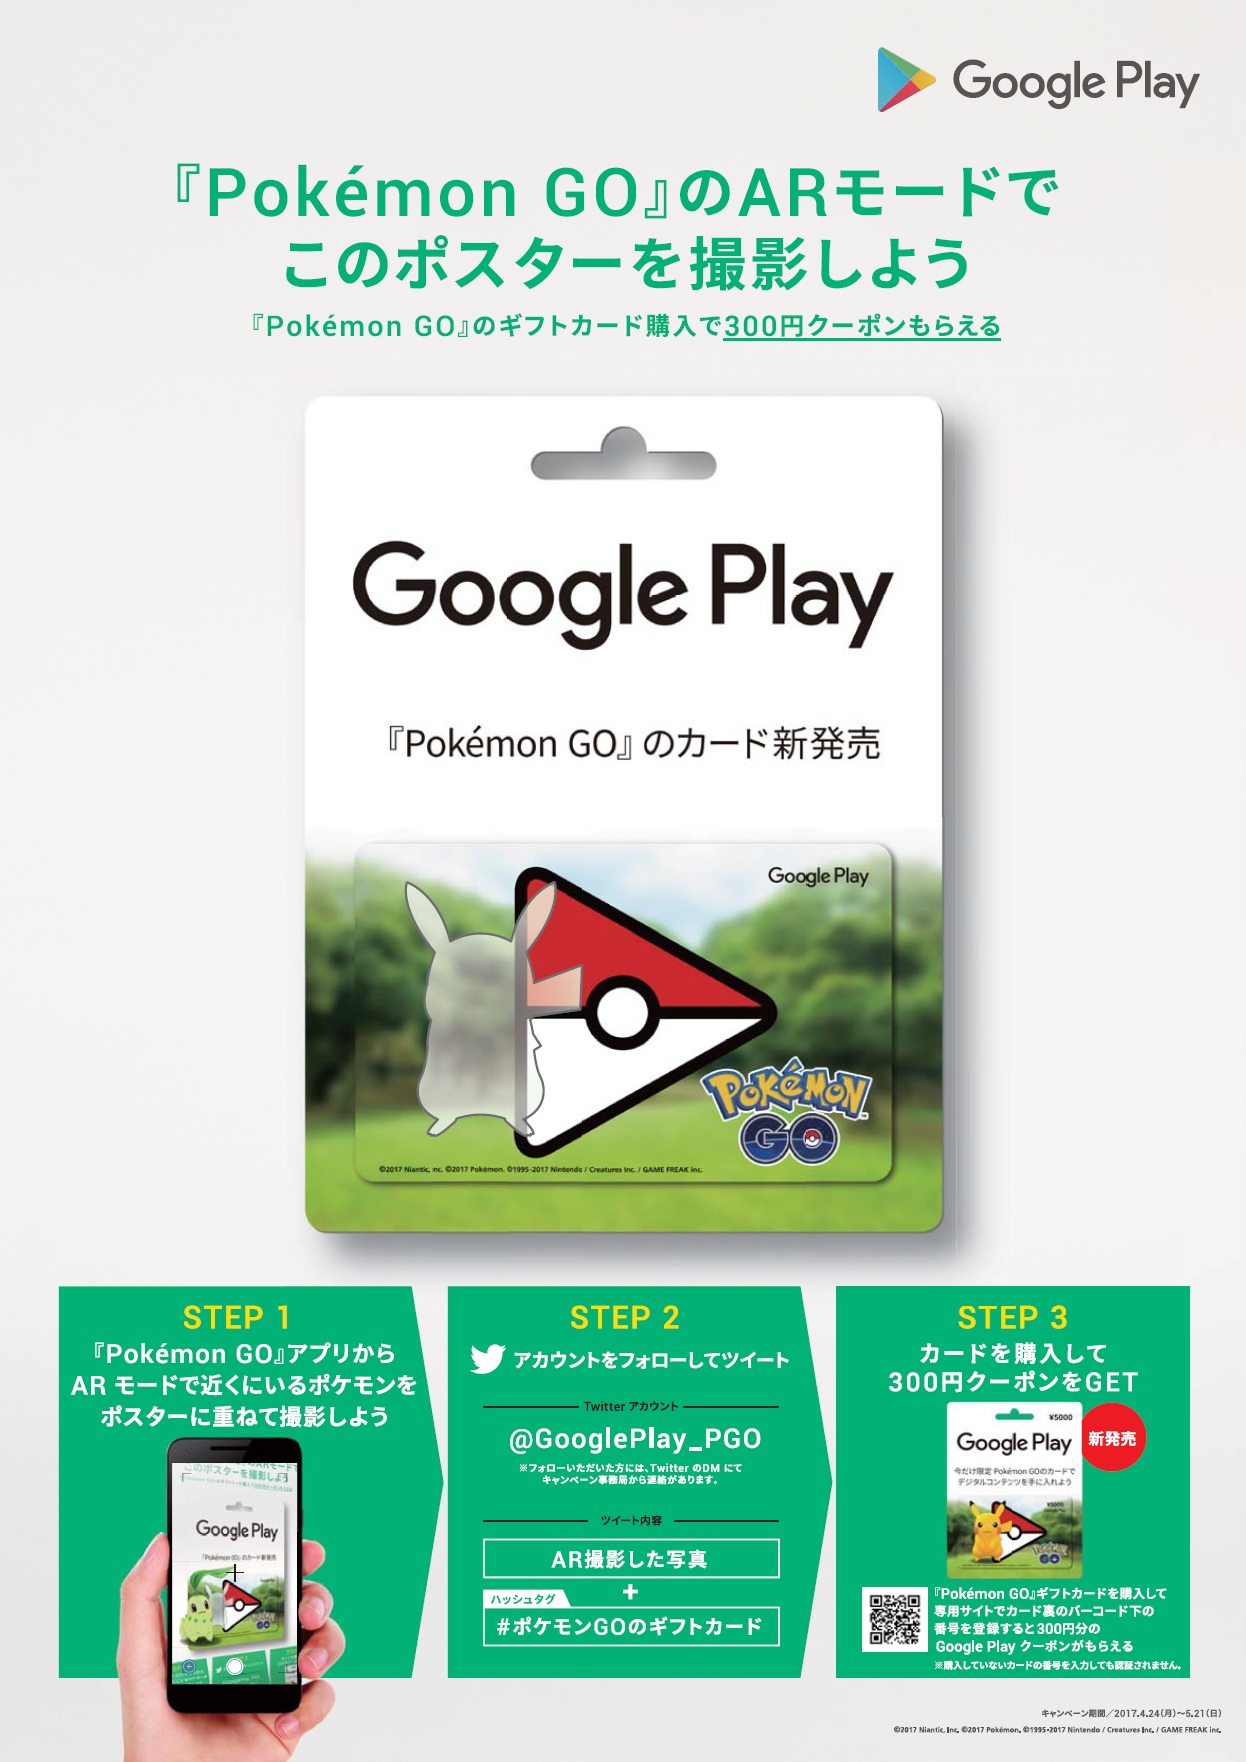 ポケモンGOデザインのGoogle Playカード キャンペーン